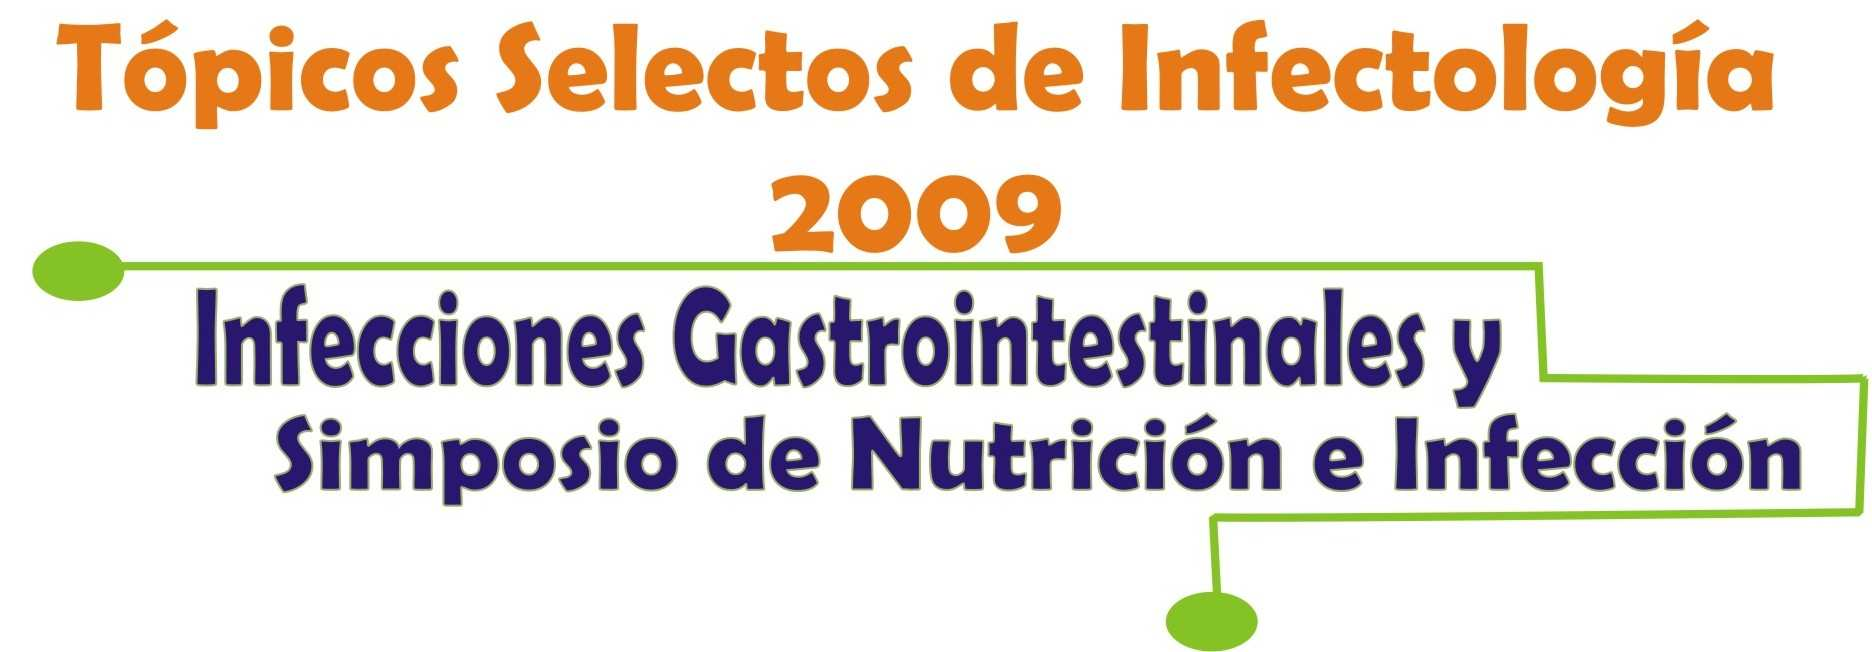 Caso clínico Diarrea persistente Jorge Humberto Botero Garcés 1,2,4,5. MD- MSc en inmunología. Lucía Marleny Gallego García 3,4,5,6. Bacterióloga y Laboratorista Clínica.